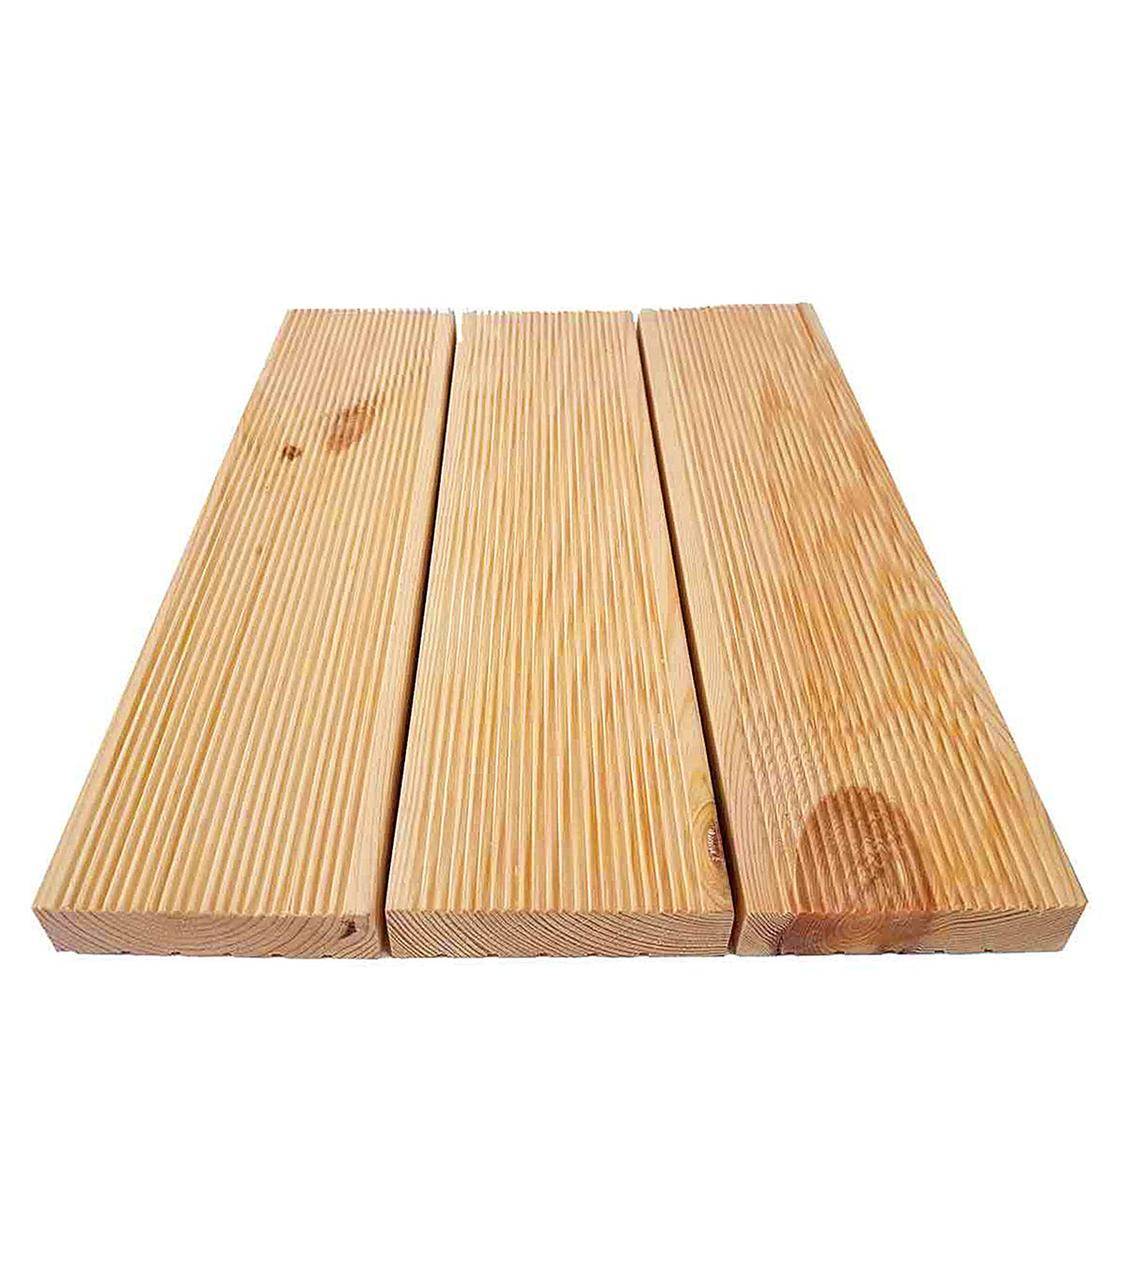 Пол из деревянных досок: виды и их особенности - ремонт и дизайн